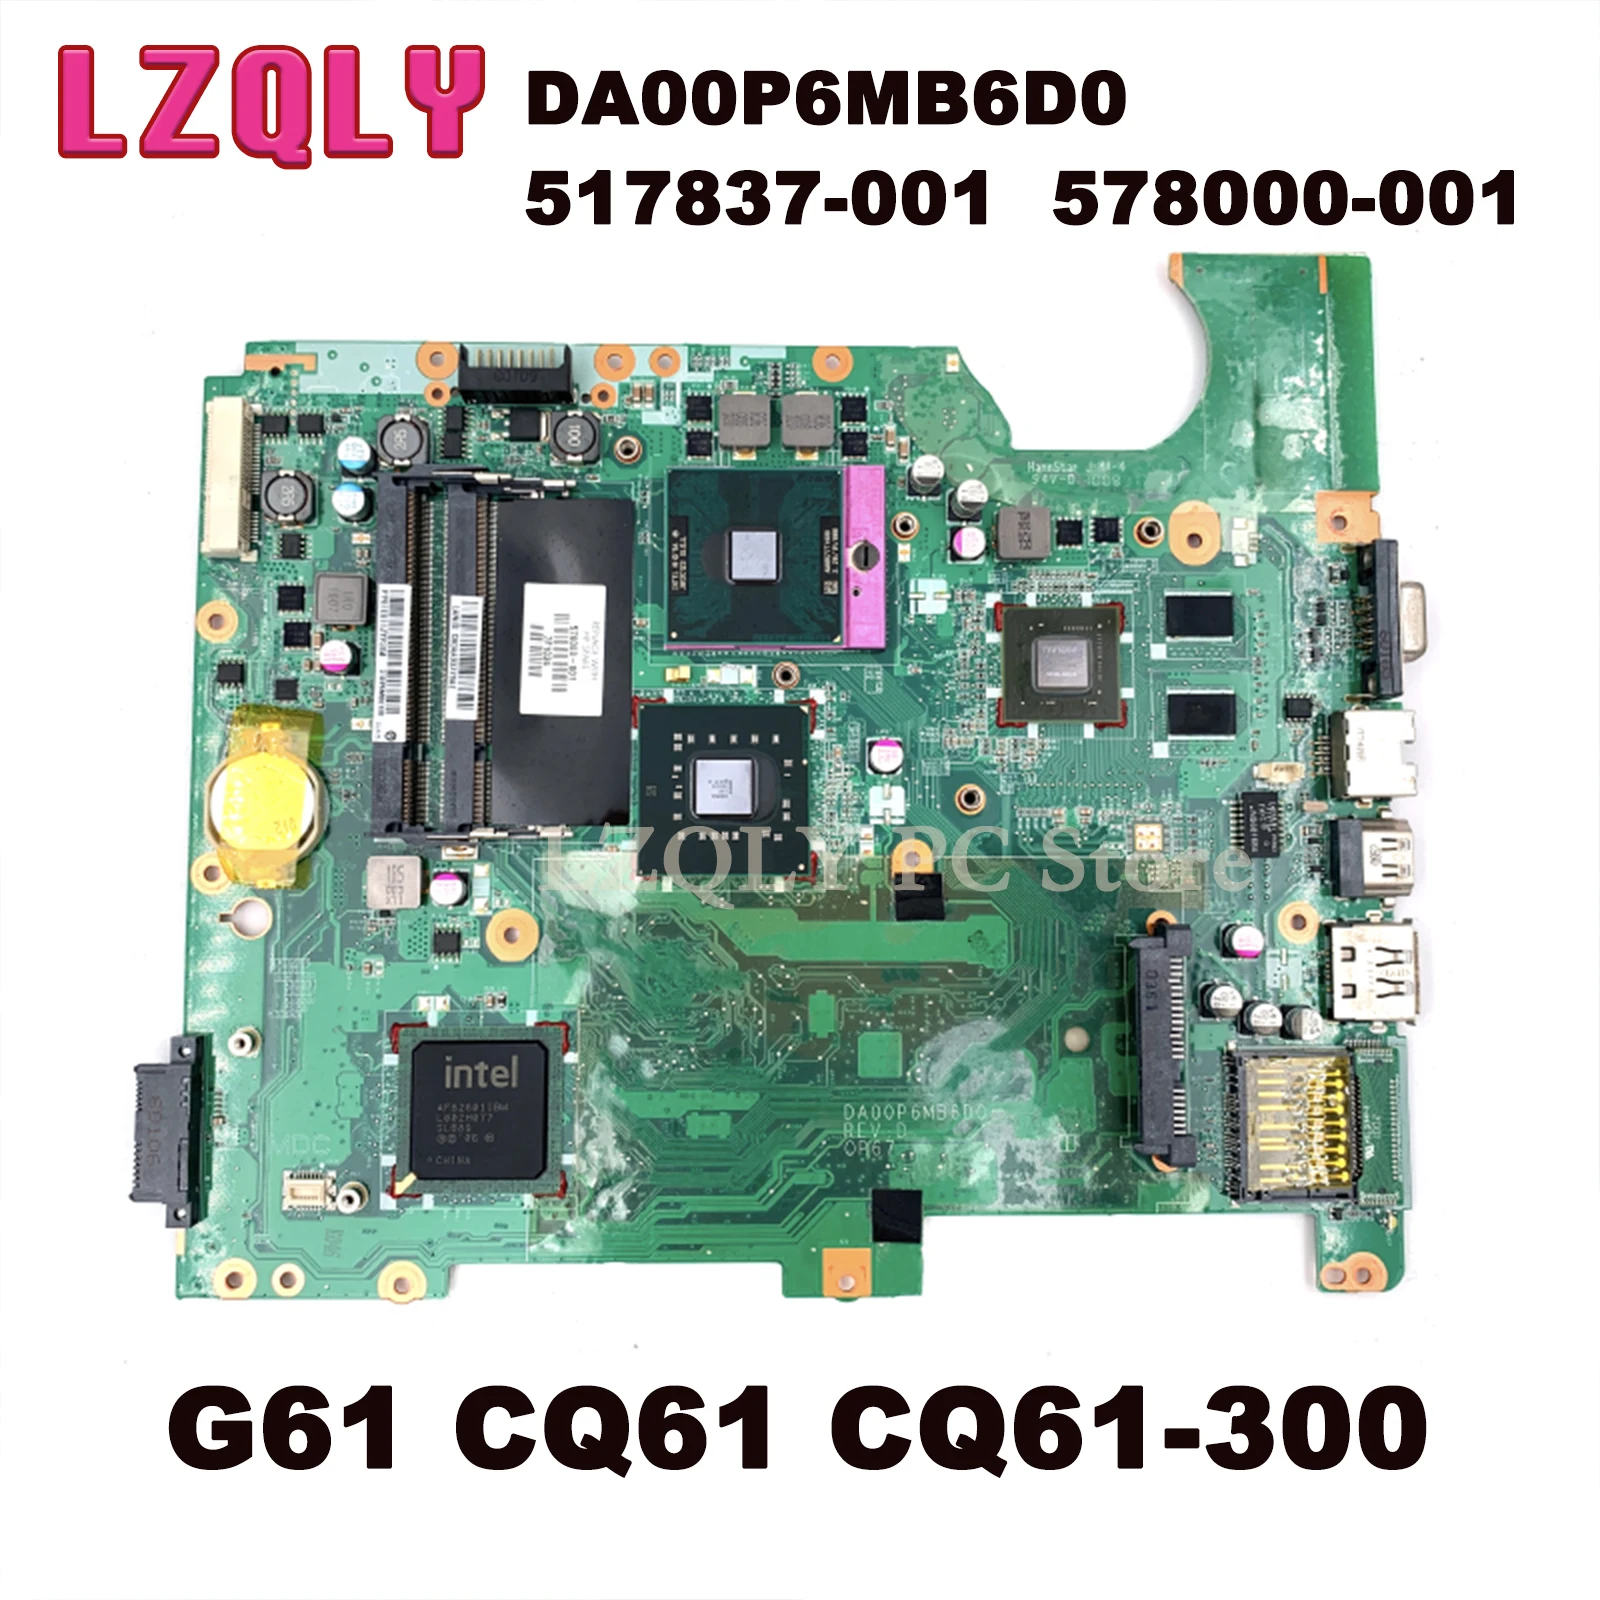 LZQLY DA00P6MB6D0 517837-001 578000-001 For HP compaq G61 CQ61 CQ61-300 Laptop Motherboard PM45 DDR2 Free CPU G103M GPU